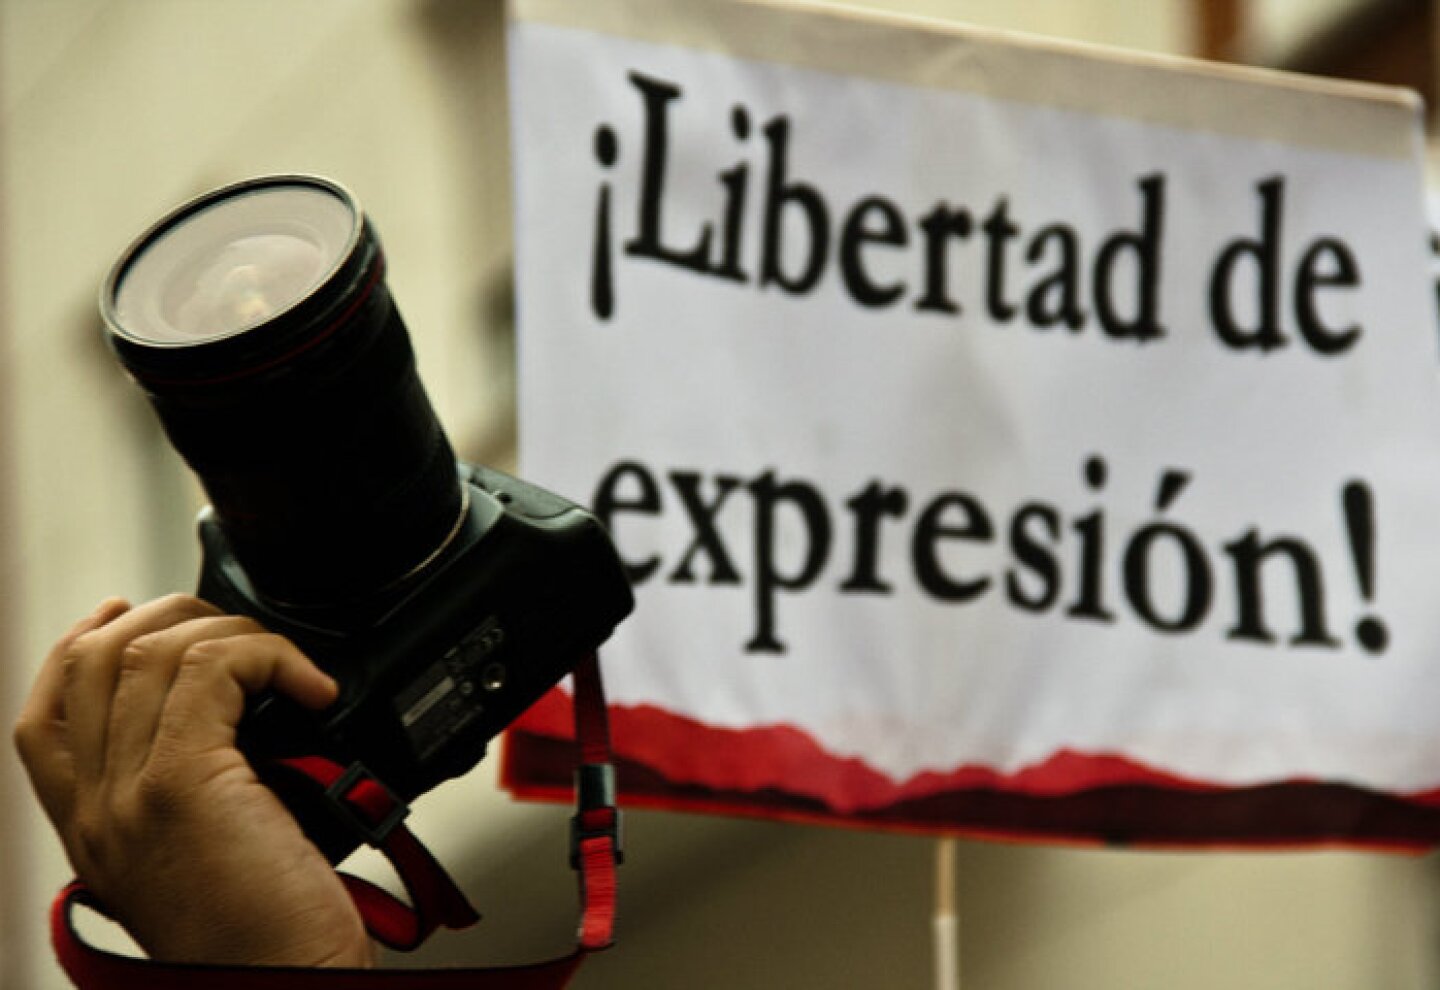 Libertad de Expresión